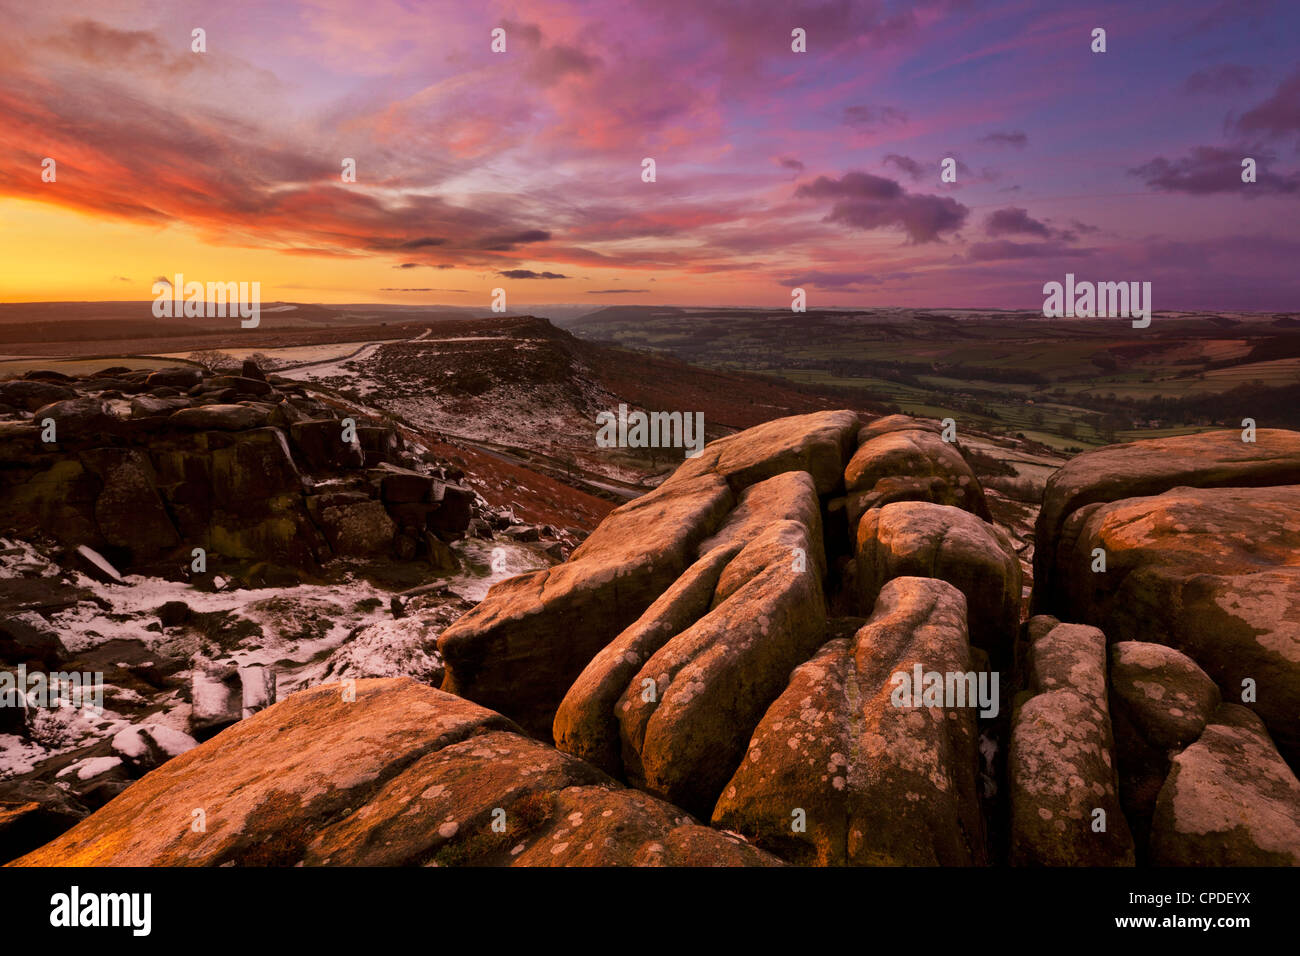 Gelido inverno sunrise, Froggatt e bordo Curbar, Parco Nazionale di Peak District, Derbyshire, England, Regno Unito, Europa Foto Stock